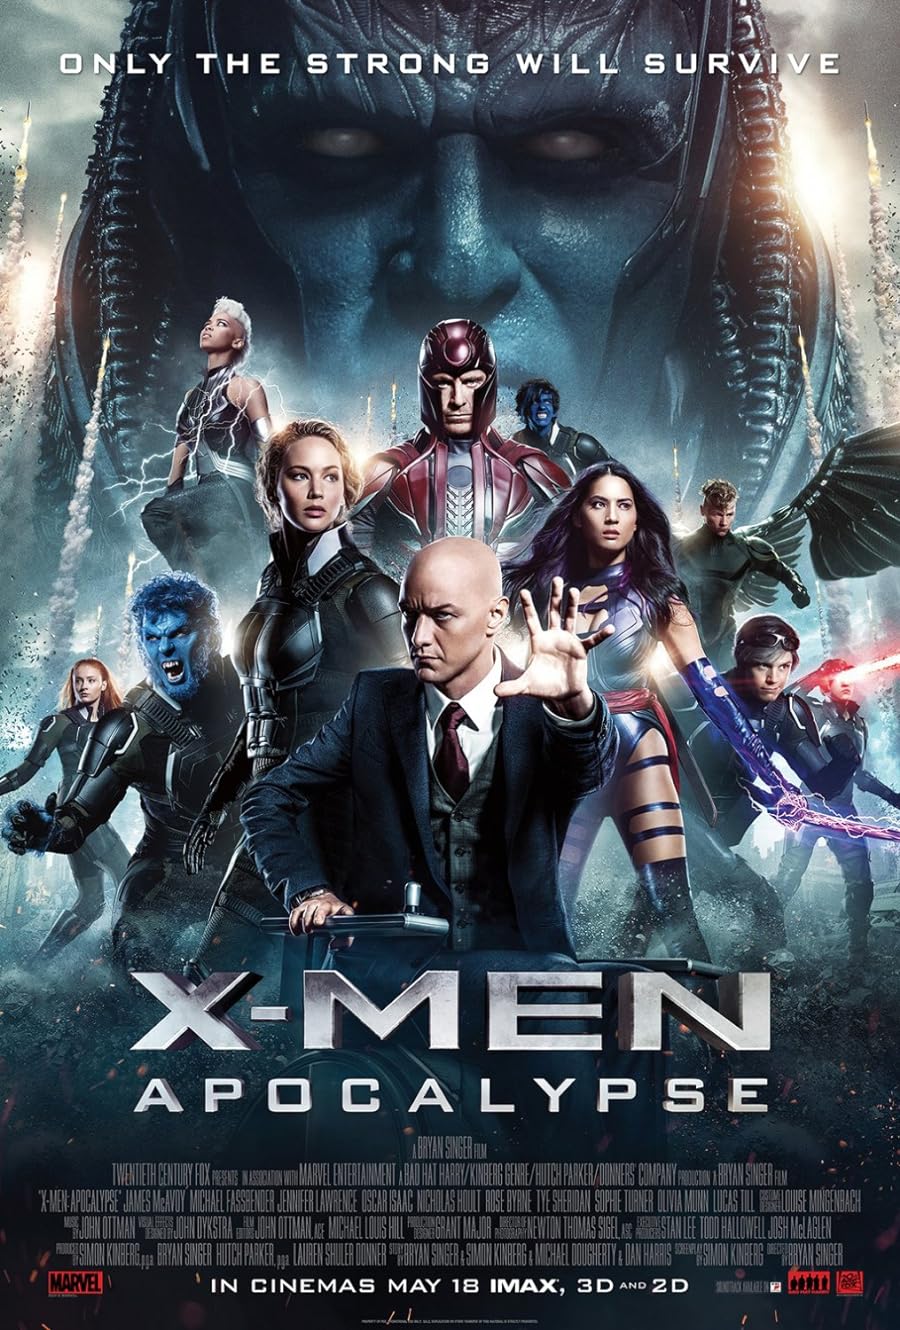 دانلود فیلم X-Men: Apocalypse 2016